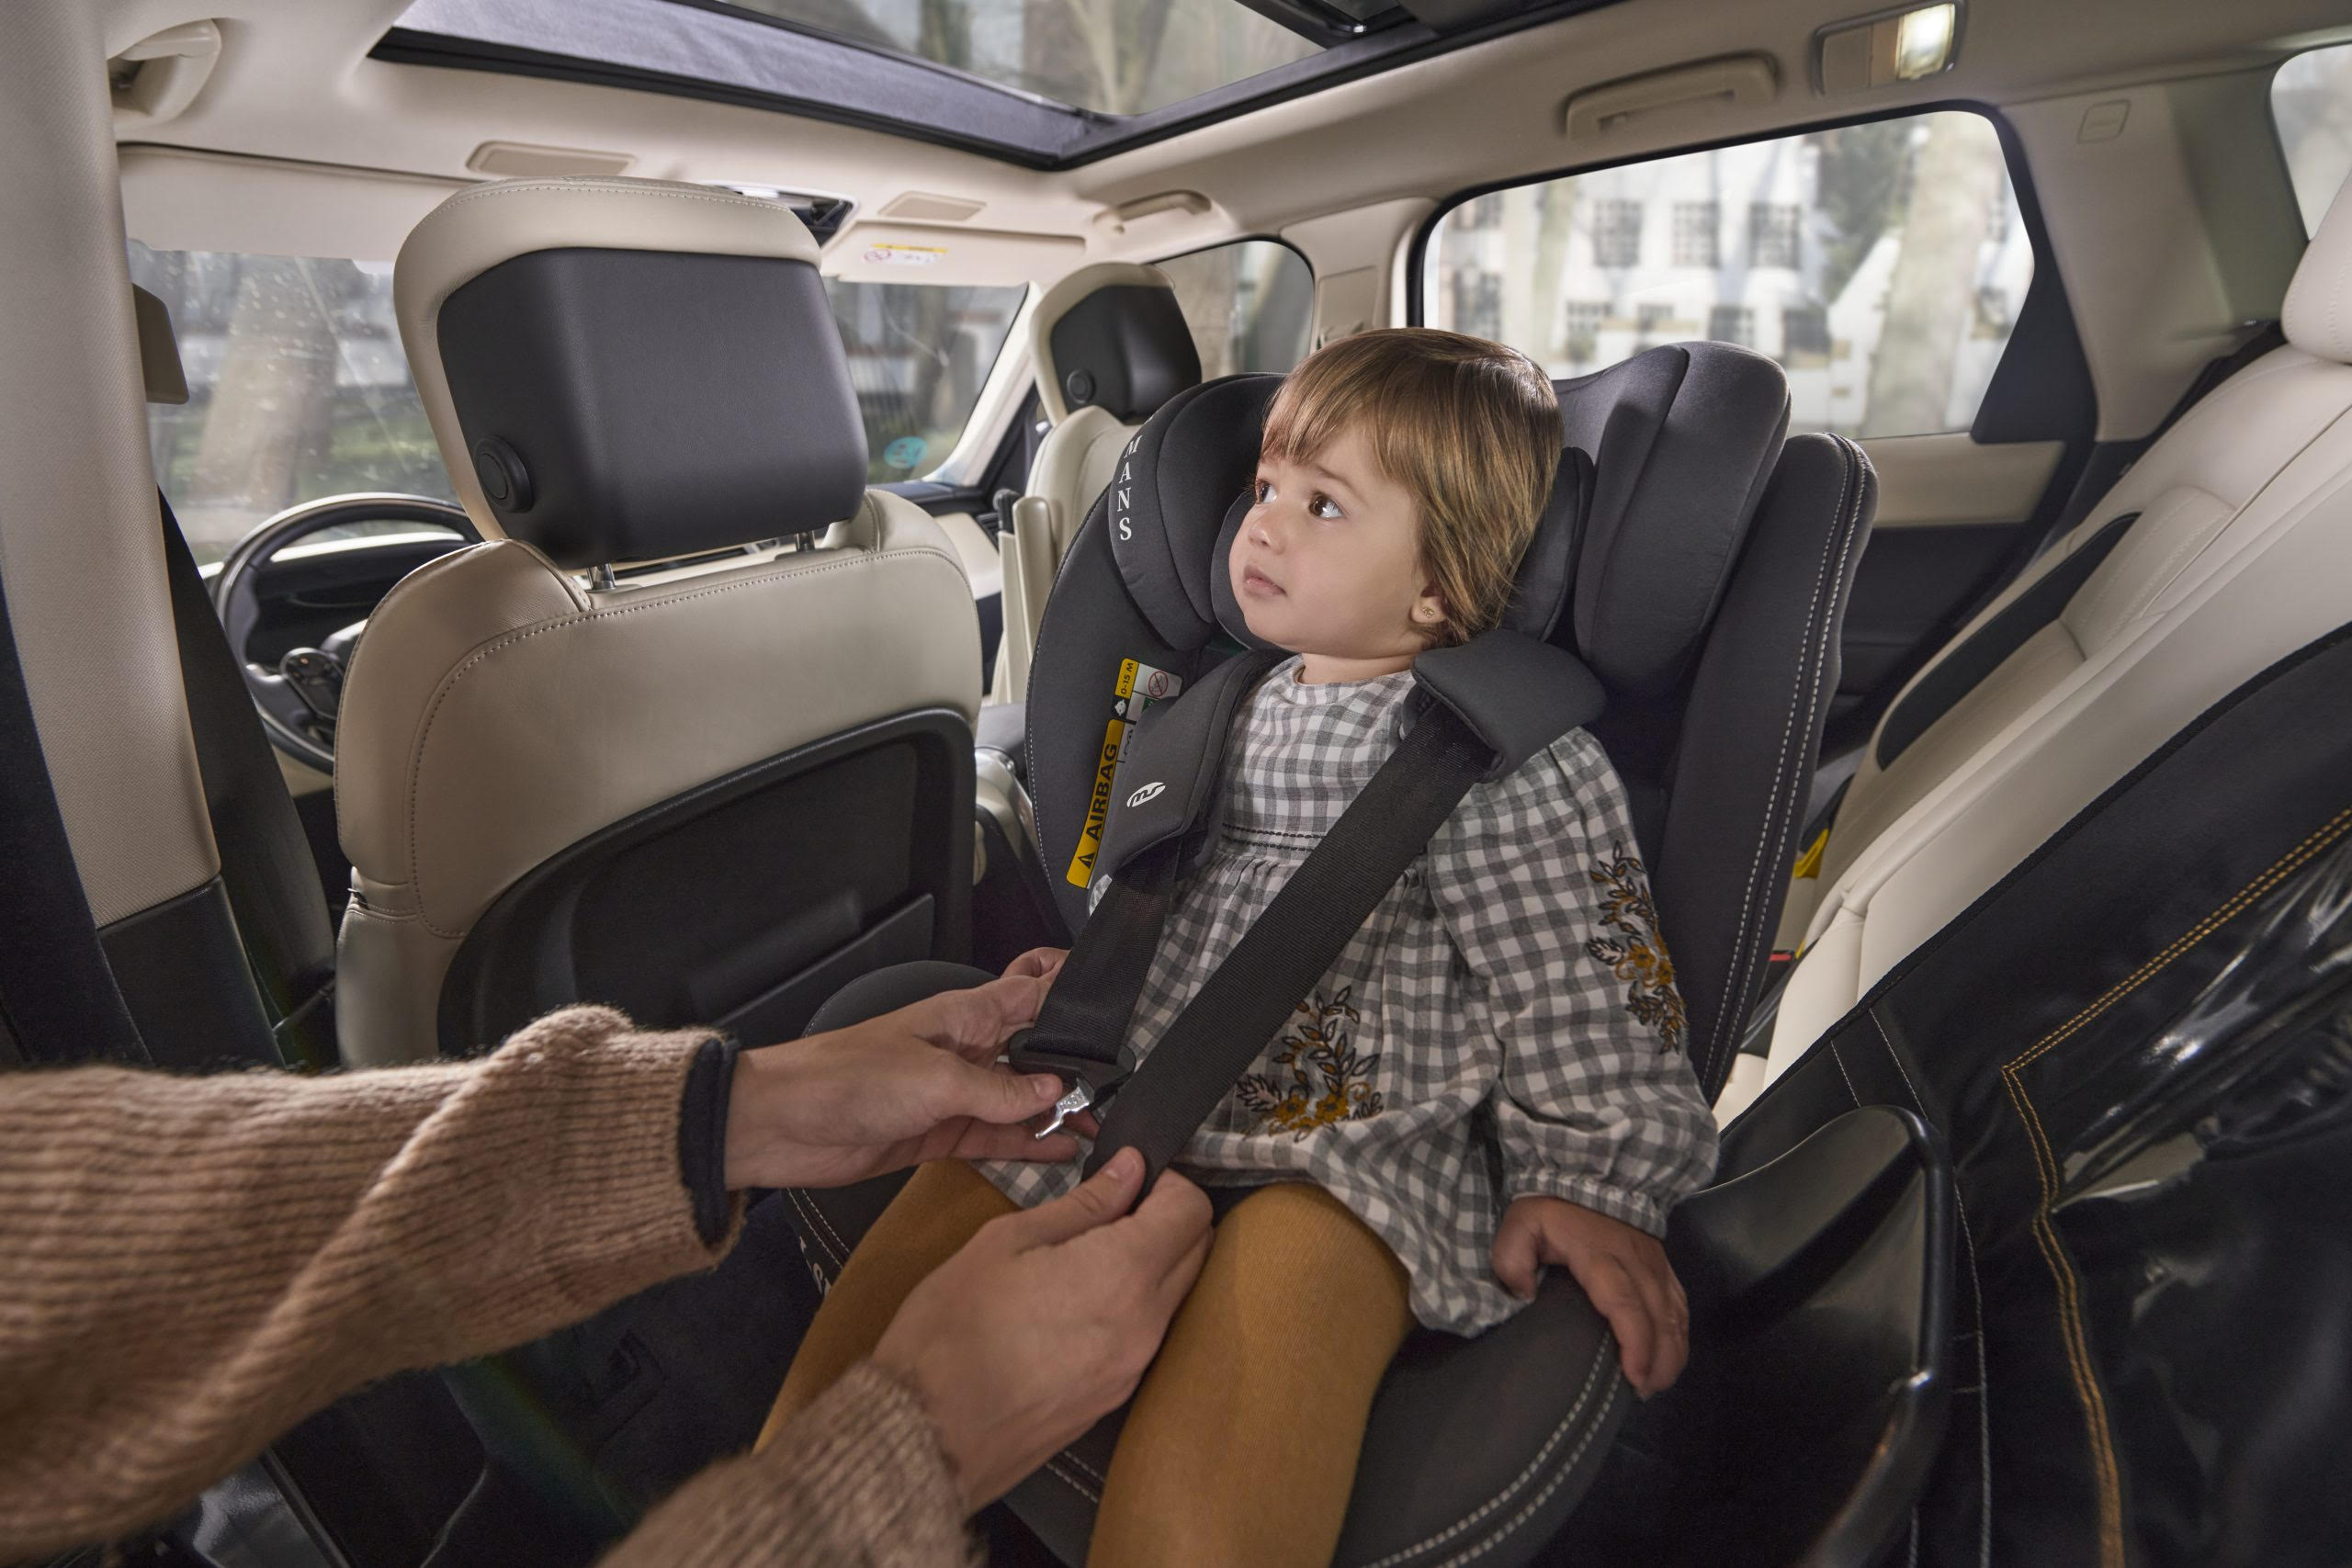 La sicurezza dei bambini in auto è un tema che preoccupa tutti i genitori. Ecco tutto ciò che c'è da sapere sulla sicurezza dei bambini come passeggeri e l'importanza delle condizioni tecniche del veicolo.